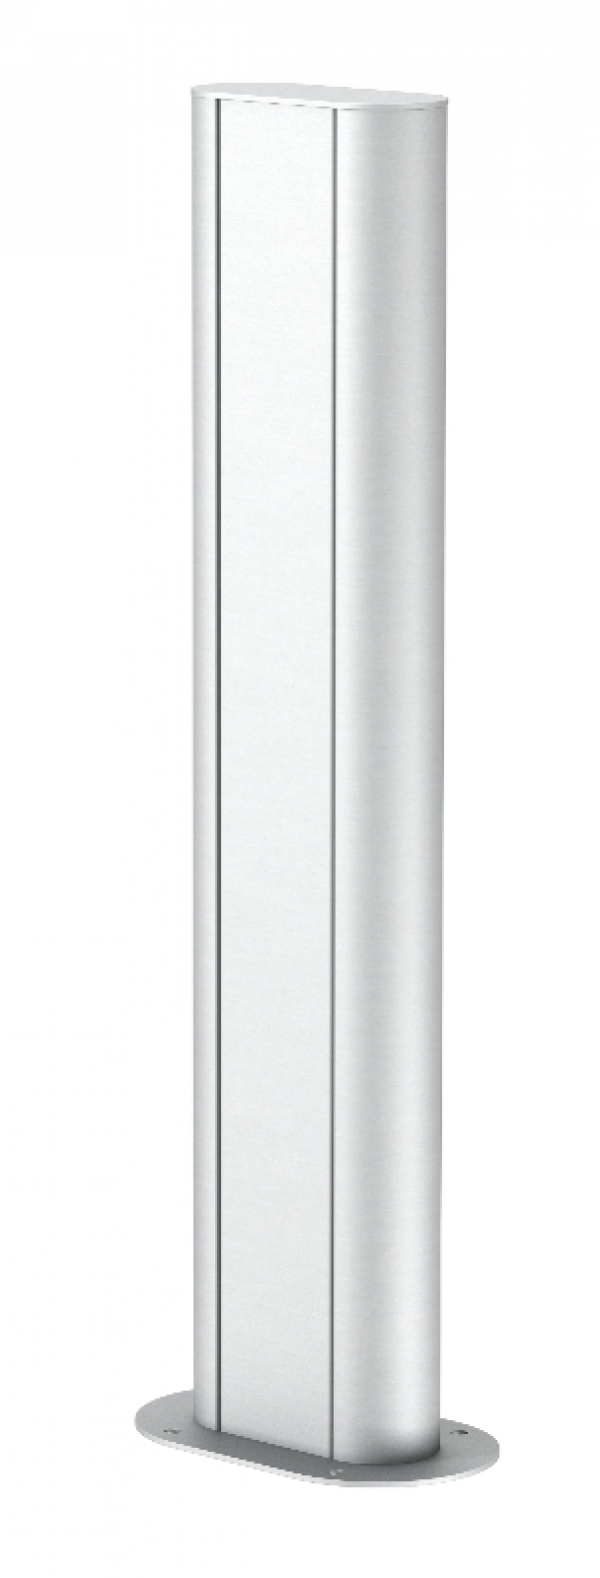 6289096 - OBO BETTERMANN Электромонтажная колонна 0,68 м 1-сторонняя 70x140x675 мм (алюминий) (ISSOGHS70140EL).